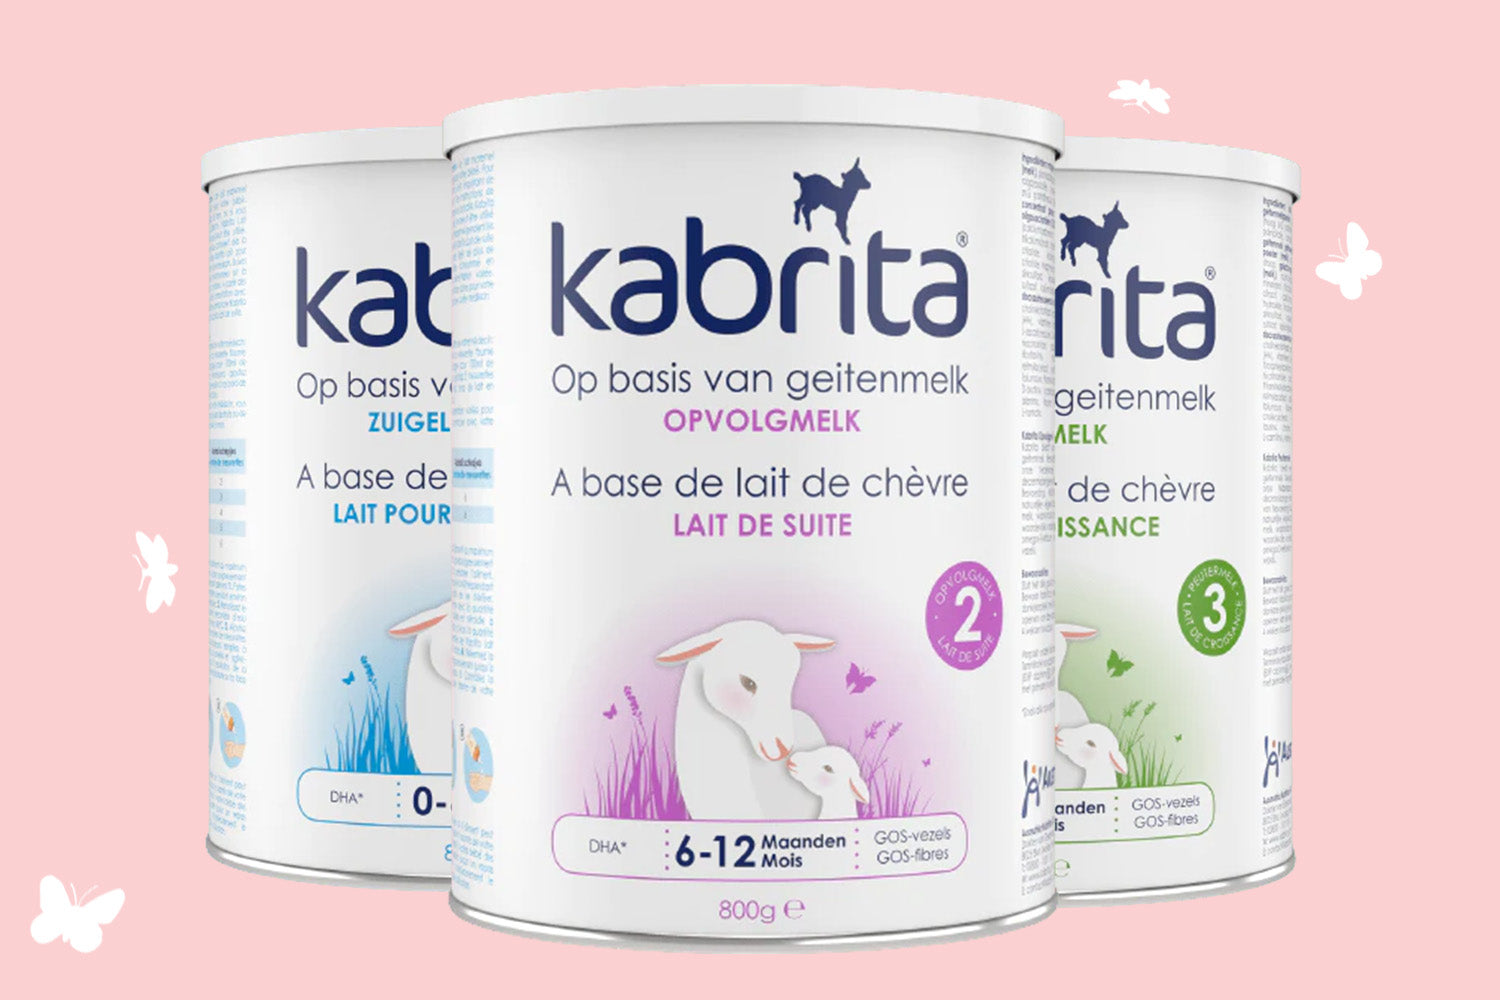 Formule de tout-petit de lait de chèvre Kabrita